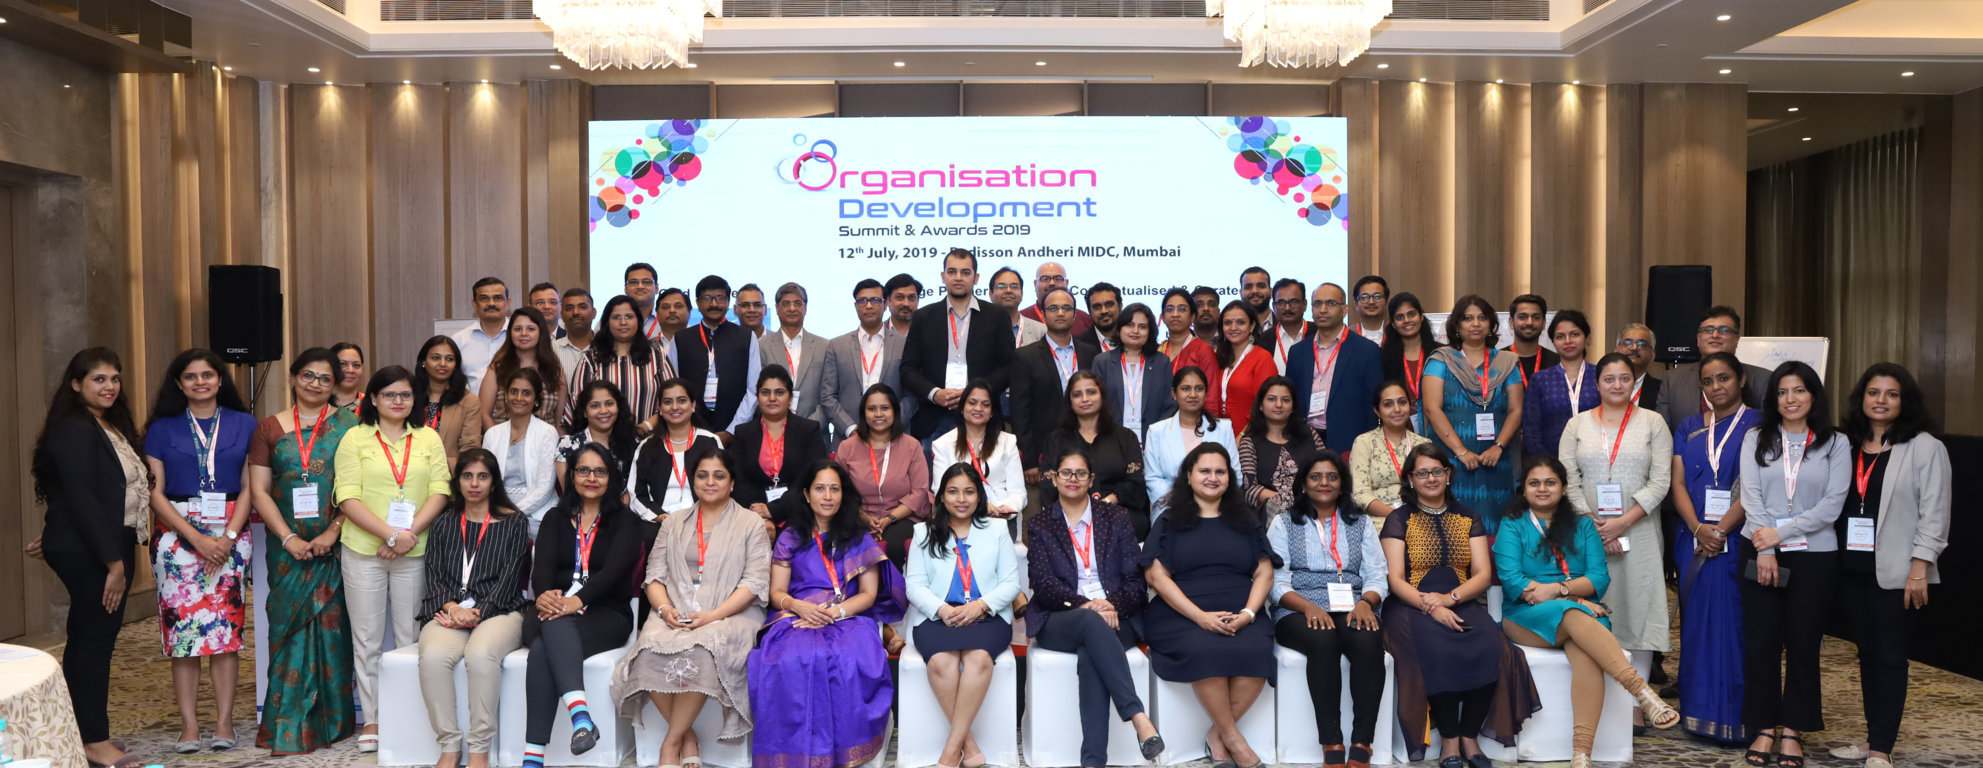 Organisation Development Summit & Awards 2019